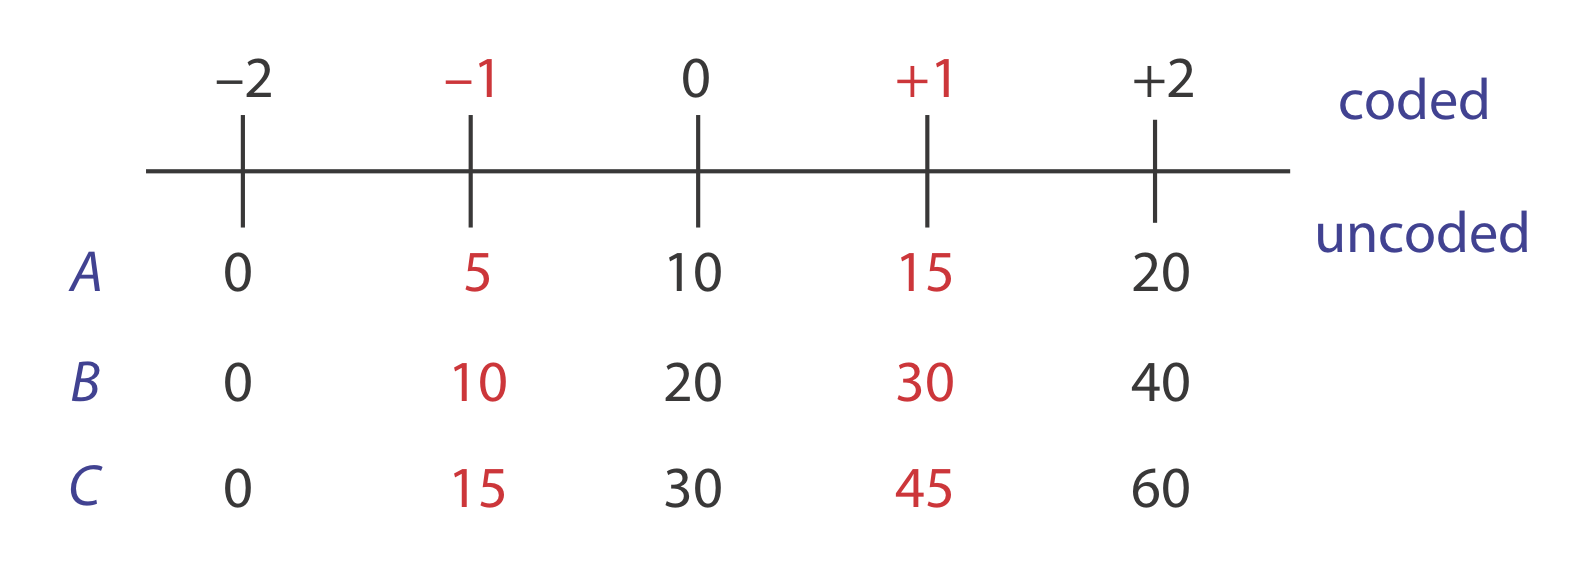 Los valores codificados cuentan hasta 2 desde -2. Los valores no codificados muestran los diferentes valores de A, B y C.